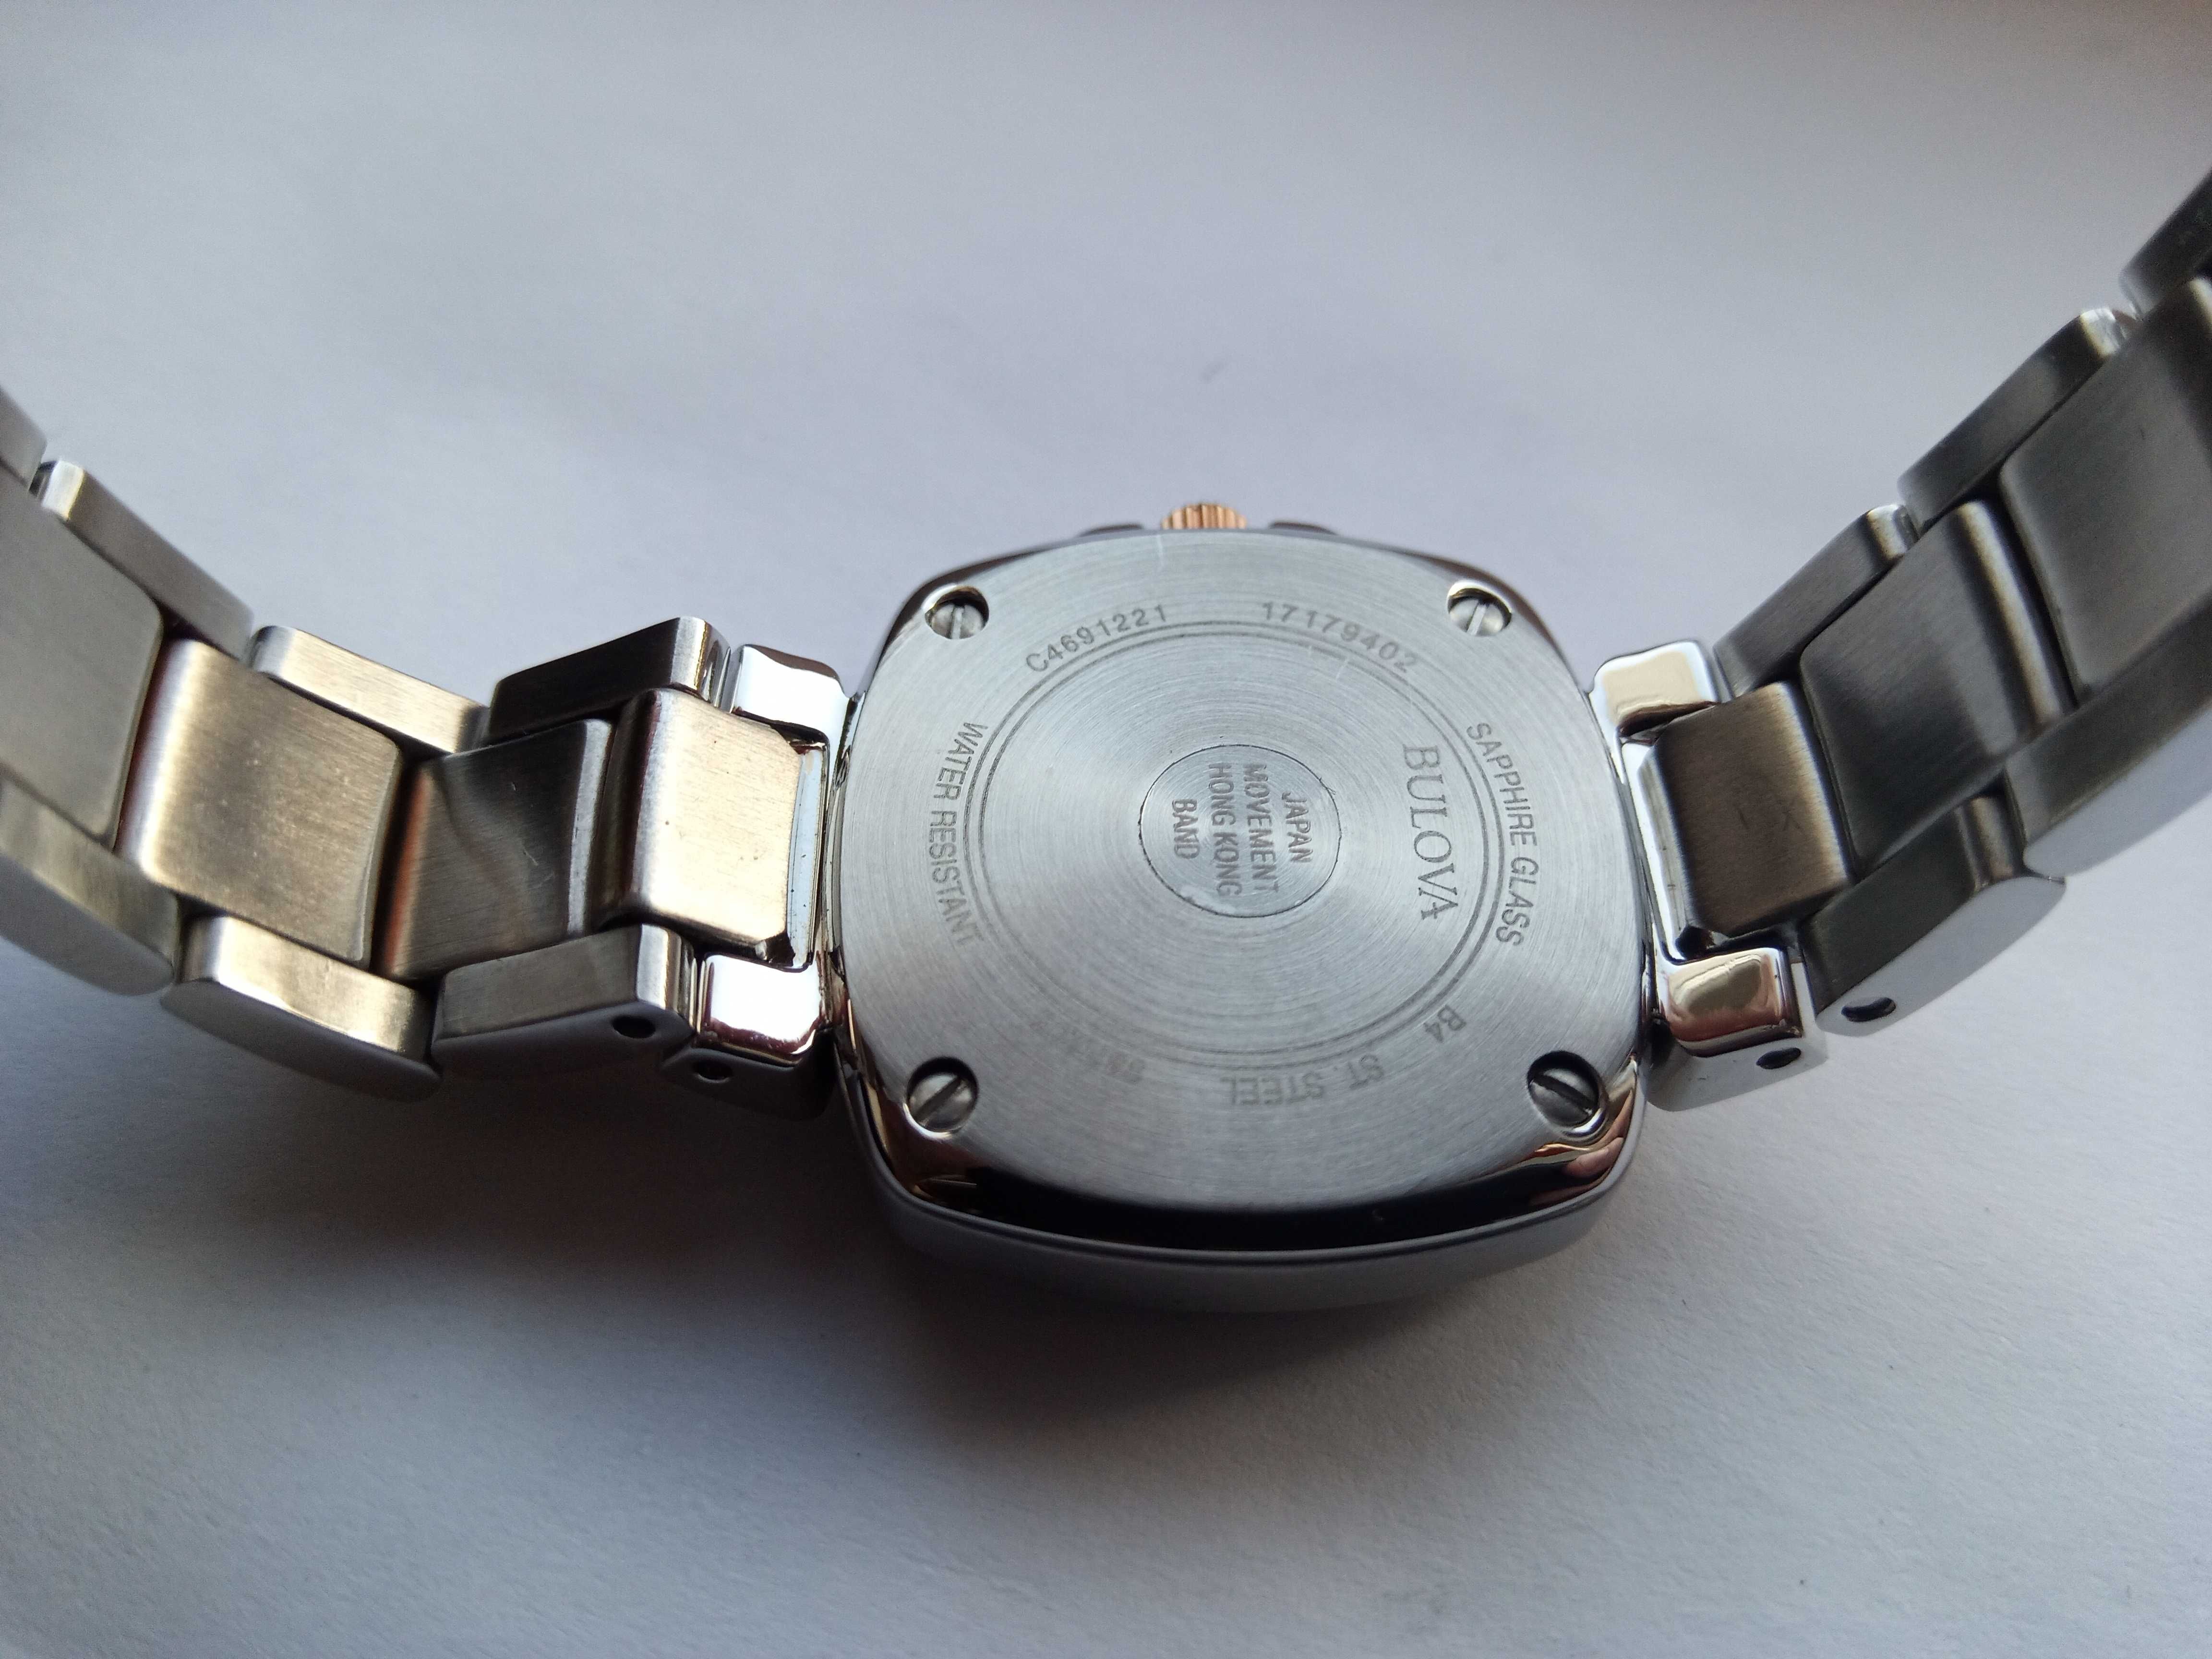 Женские часы Bulova с 46 бриллиантами. Прекрасный подарок девушке